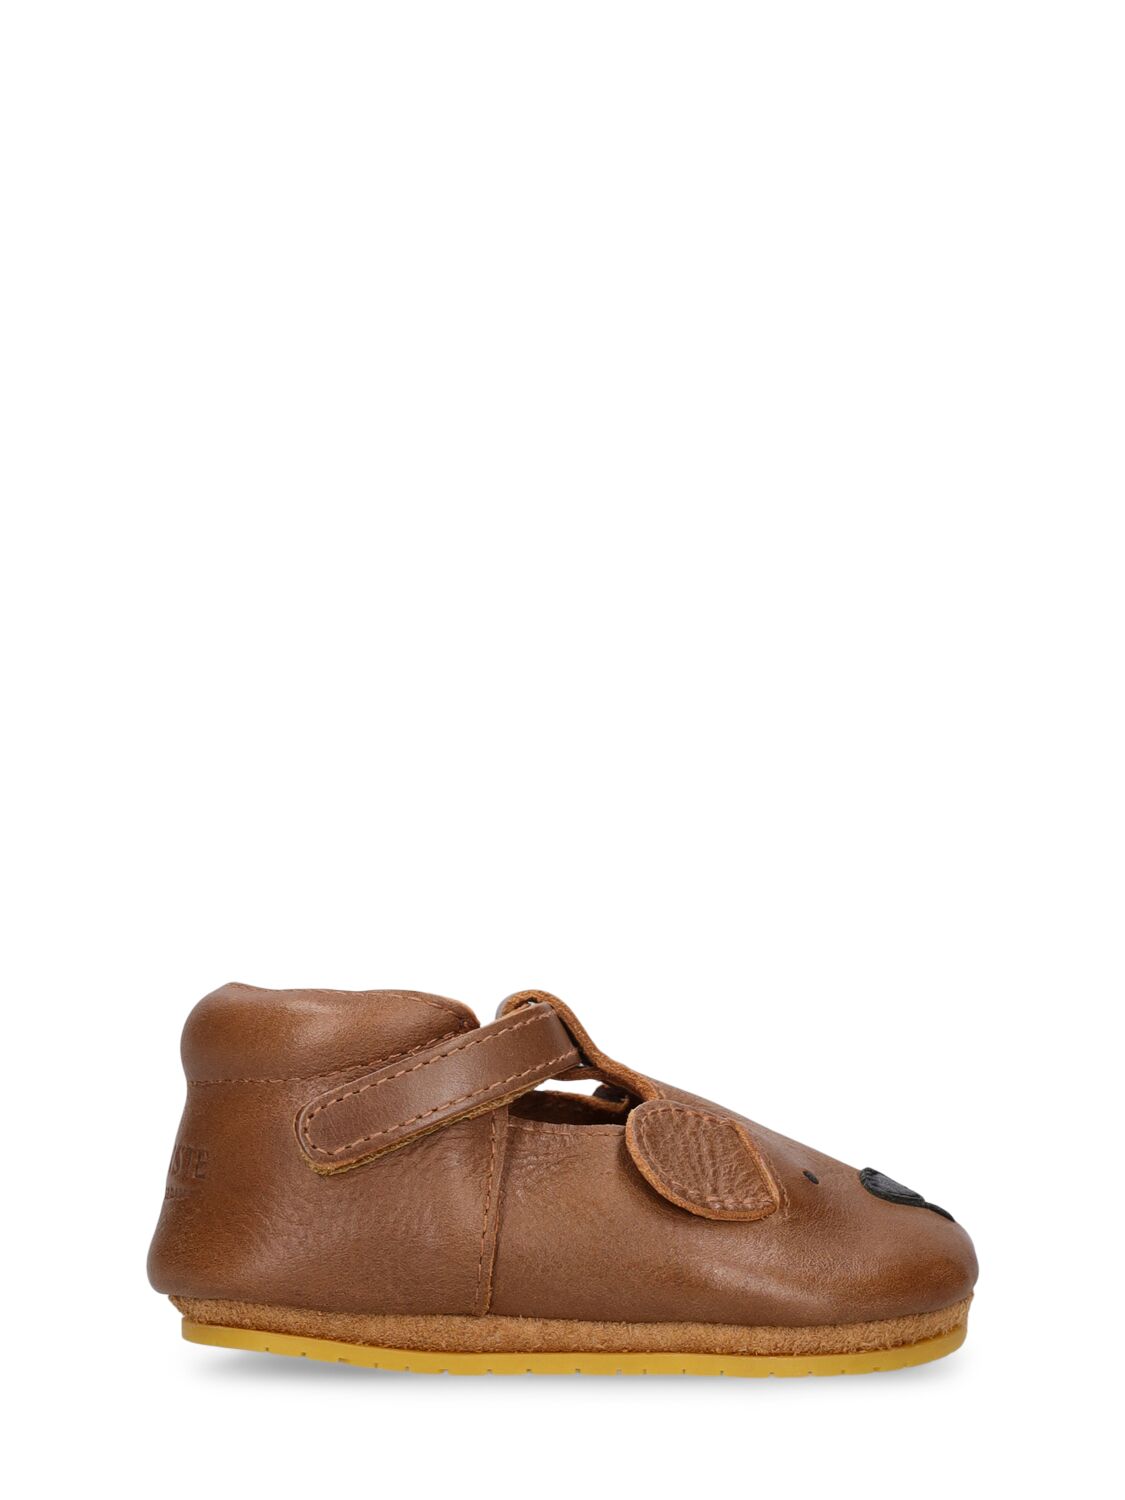 Donsje Babies' Bear Leather Pre-walker Shoes In Brown